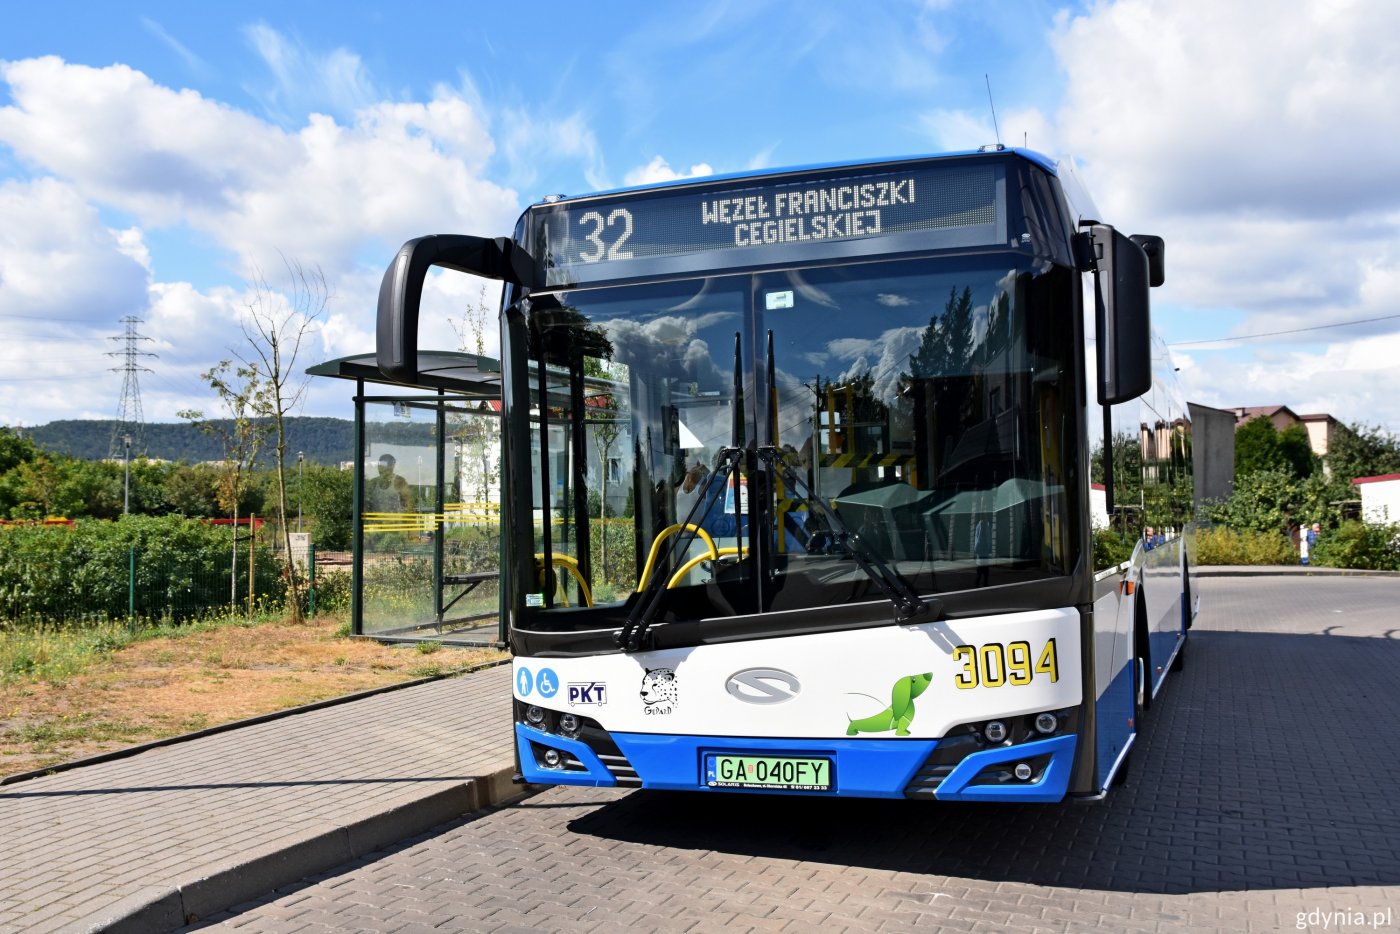 Stojący na przystanku trolejbus. Pojazd nowoczesny, standardowej długości w biało-niebieskich barwach. Trolejbus widziany od frontu. Na wyświetlaczu nr linii 32 i napis 